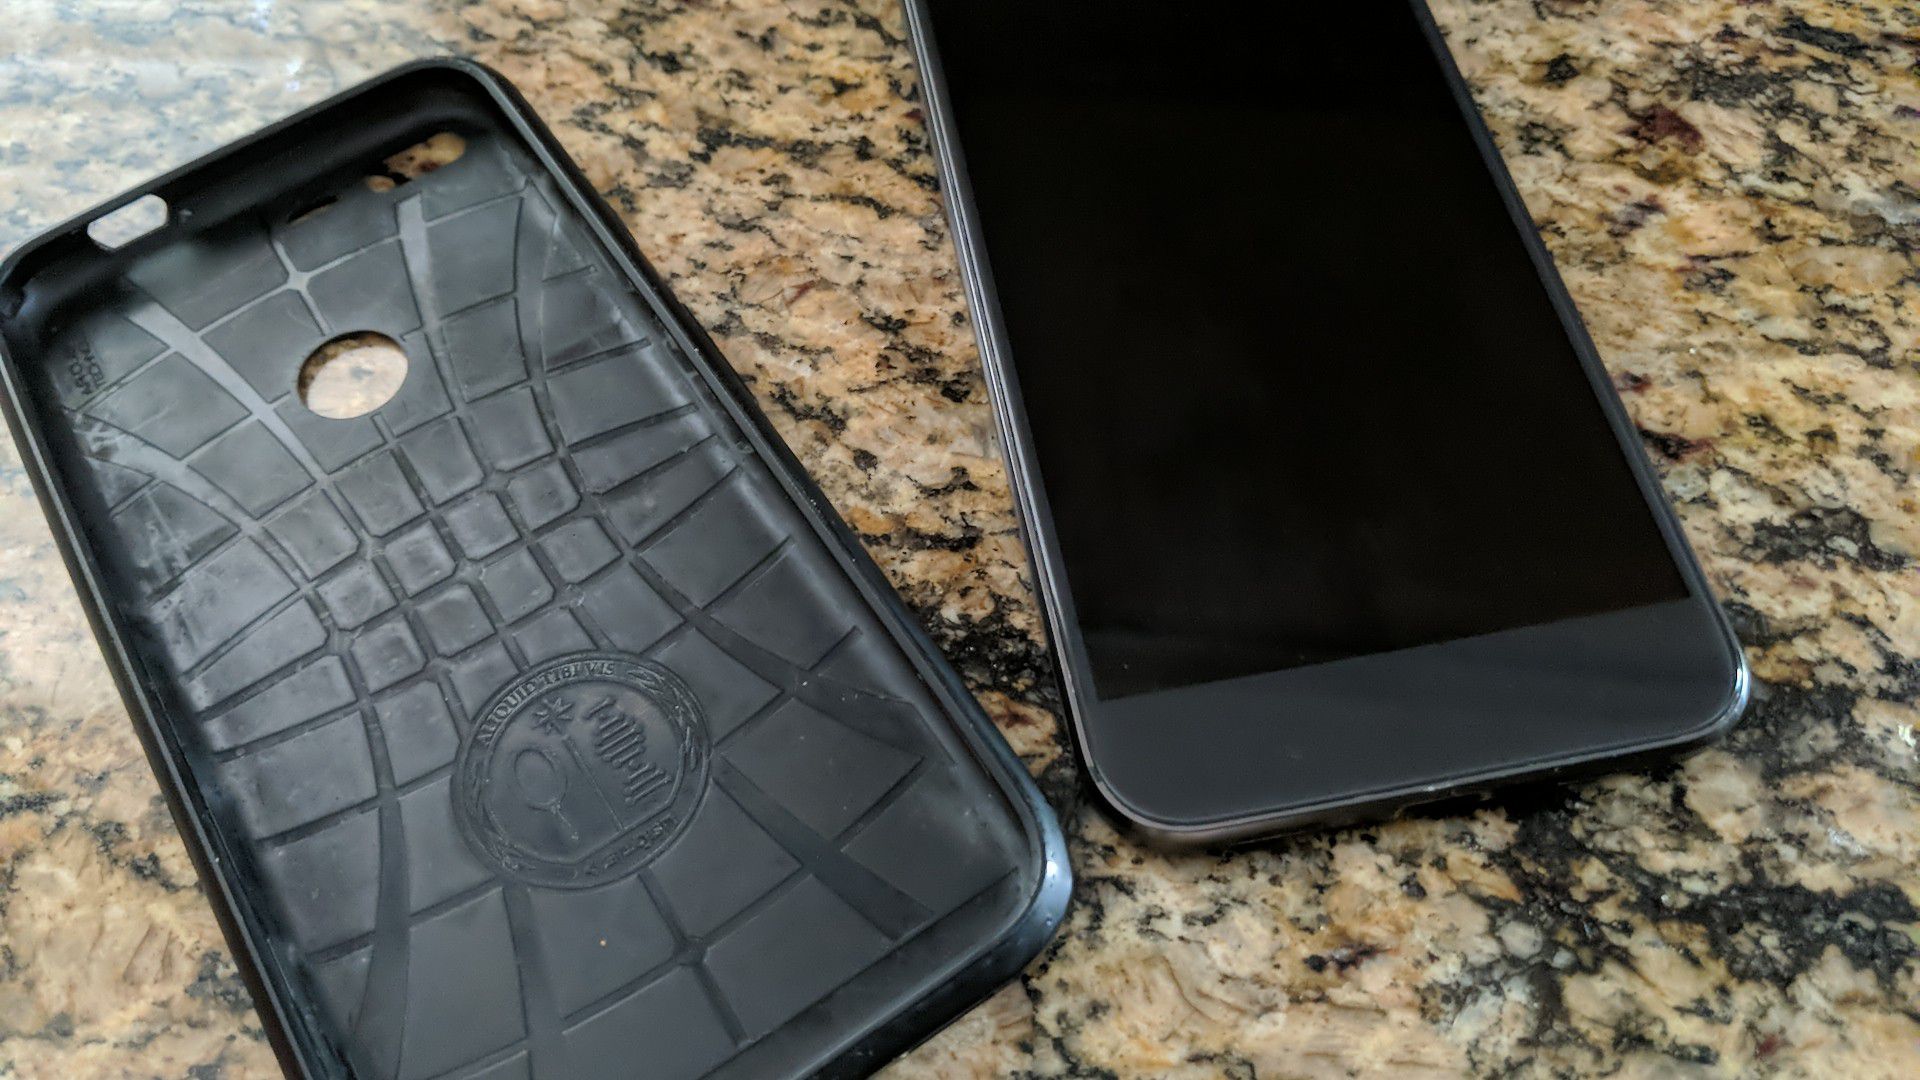 Google Pixel 1 XL w/case Clean MEI Cell Phone Unlocked